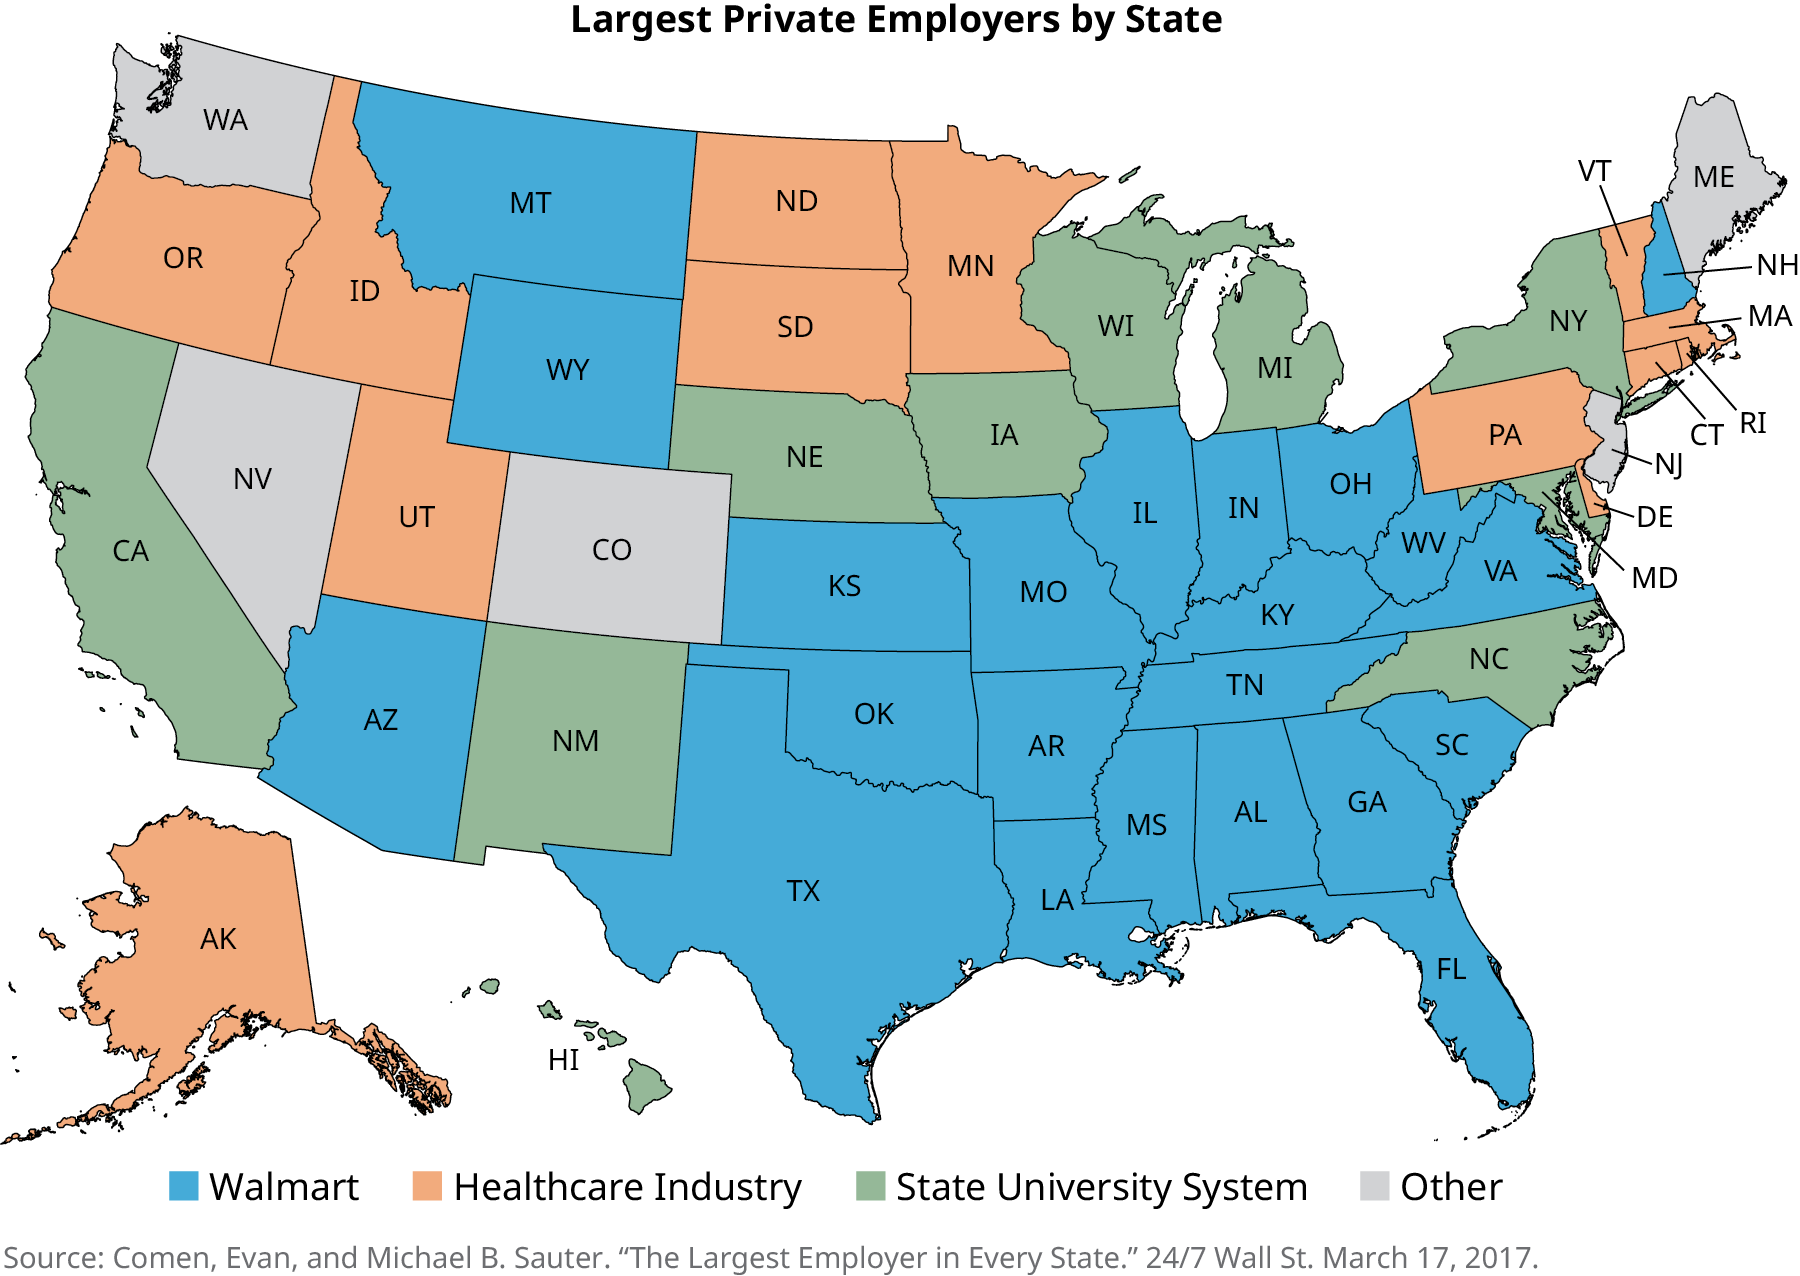 美国地图的标题是 “各州最大的私人雇主”。 沃尔玛雇主最大的州是亚利桑那州、蒙大拿州、怀俄明州、堪萨斯州、俄克拉荷马州、德克萨斯州、密苏里州、阿肯色州、路易斯安那州、密西西比州、阿拉巴马州、田纳西州、肯塔基州、伊利诺伊州、印第安纳州、俄亥俄州、西弗吉尼亚州、新罕布什尔州、南卡罗来纳州 医疗保健行业雇主最大的州是阿拉斯加、俄勒冈、爱达荷州、犹他州、北达科他州、南达科他州、明尼苏达州、宾夕法尼亚州、特拉华州、佛蒙特州、马萨诸塞州、罗德岛州和康涅狄格州。 州立大学系统雇主最大的州是加利福尼亚州、新墨西哥州、内布拉斯加州、爱荷华州、威斯康星州、密歇根州、纽约州、马里兰州和北卡罗来纳州。 将最大雇主列为其他州的州是华盛顿州、内华达州、科罗拉多州、缅因州和新泽西州。